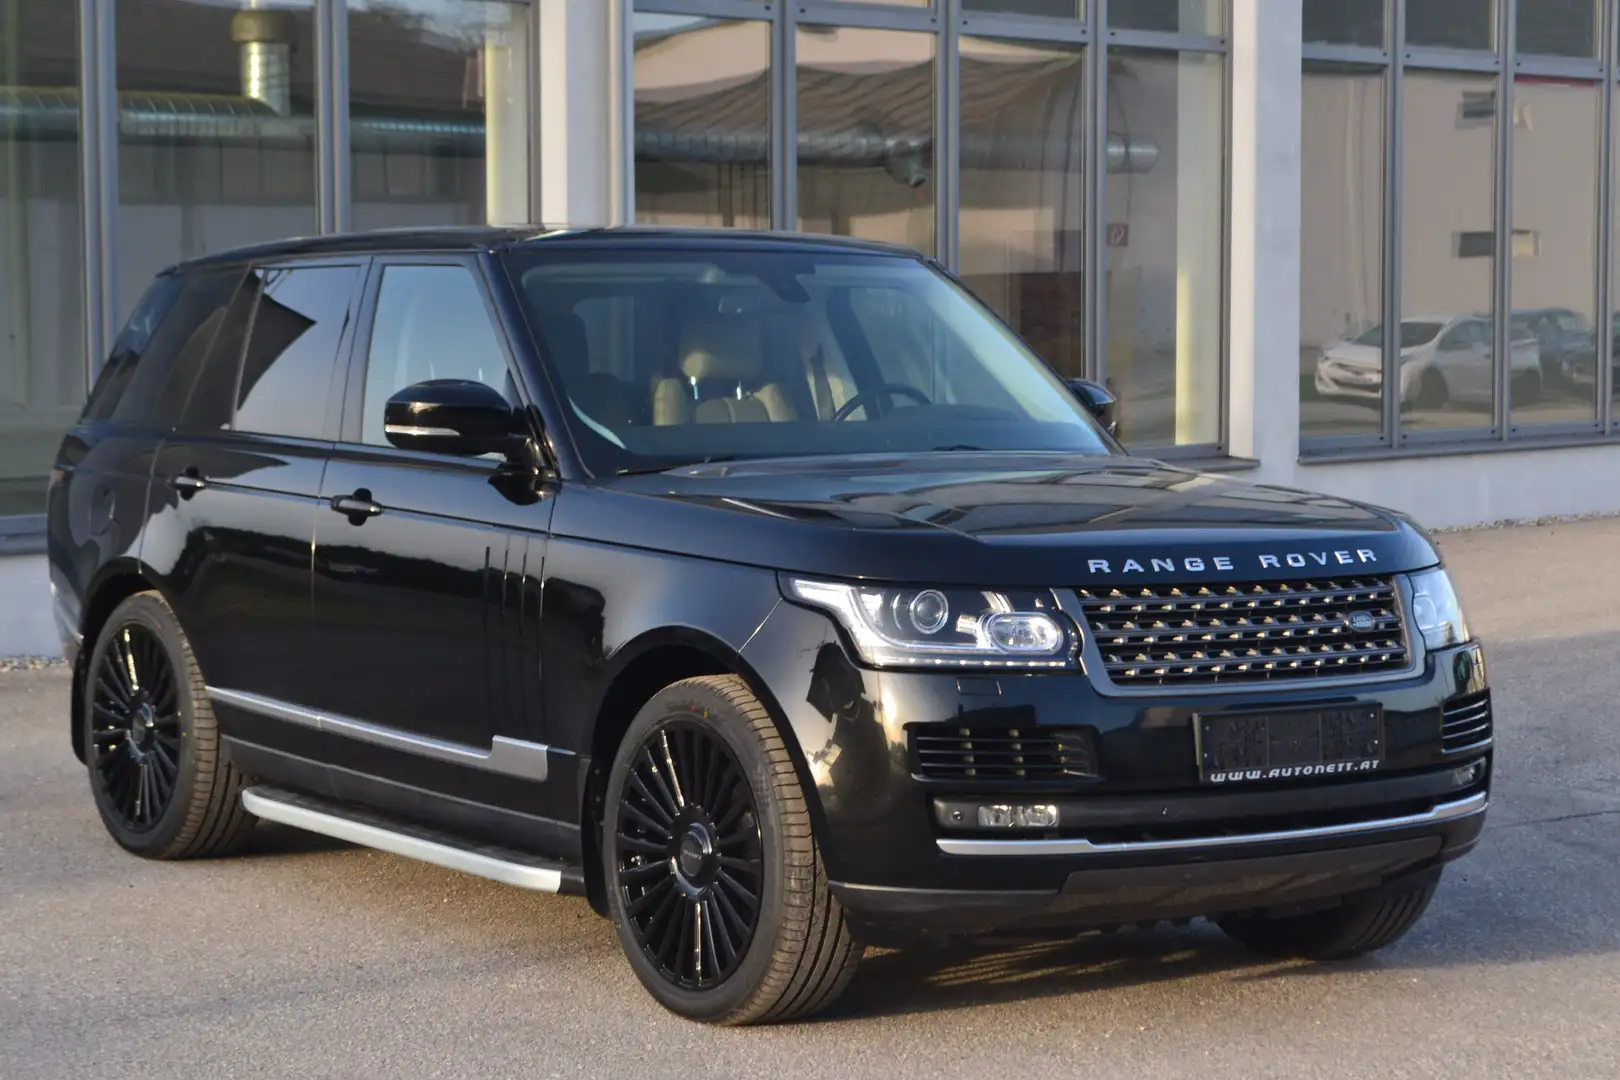 Land Rover Range Rover SUV/Geländewagen/Pickup in Schwarz gebraucht in Wels  für € 55 900,-